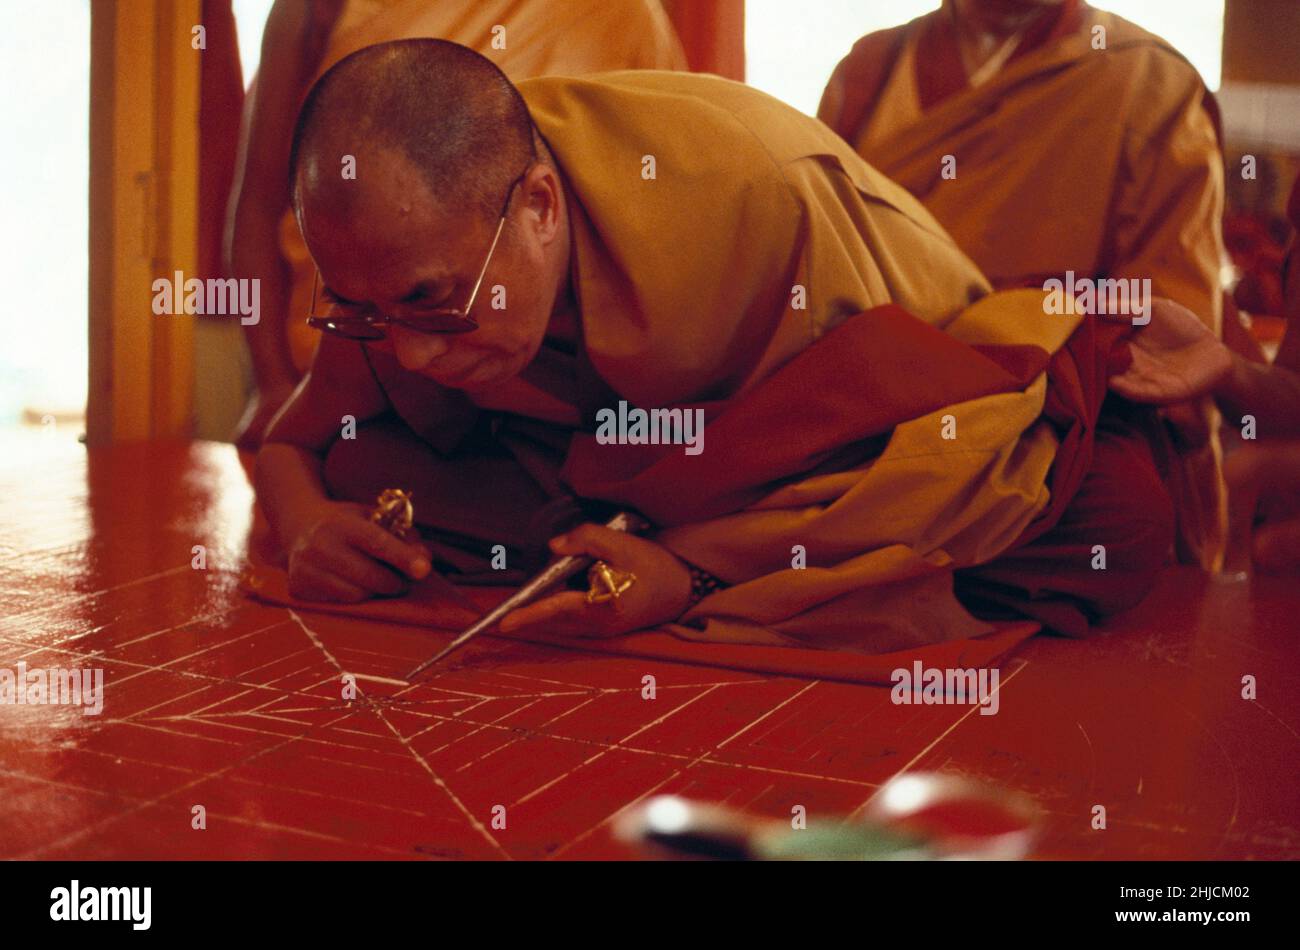 Le Dalaï Lama, chef politique et spirituel du peuple tibétain, dessinant la première ligne d'un mandala de sable au Tibet.Tenzin Gyatso (né en 1935) est le Dalaï Lama de 14th.Il a reçu le Prix Nobel de la paix en 1989. Banque D'Images